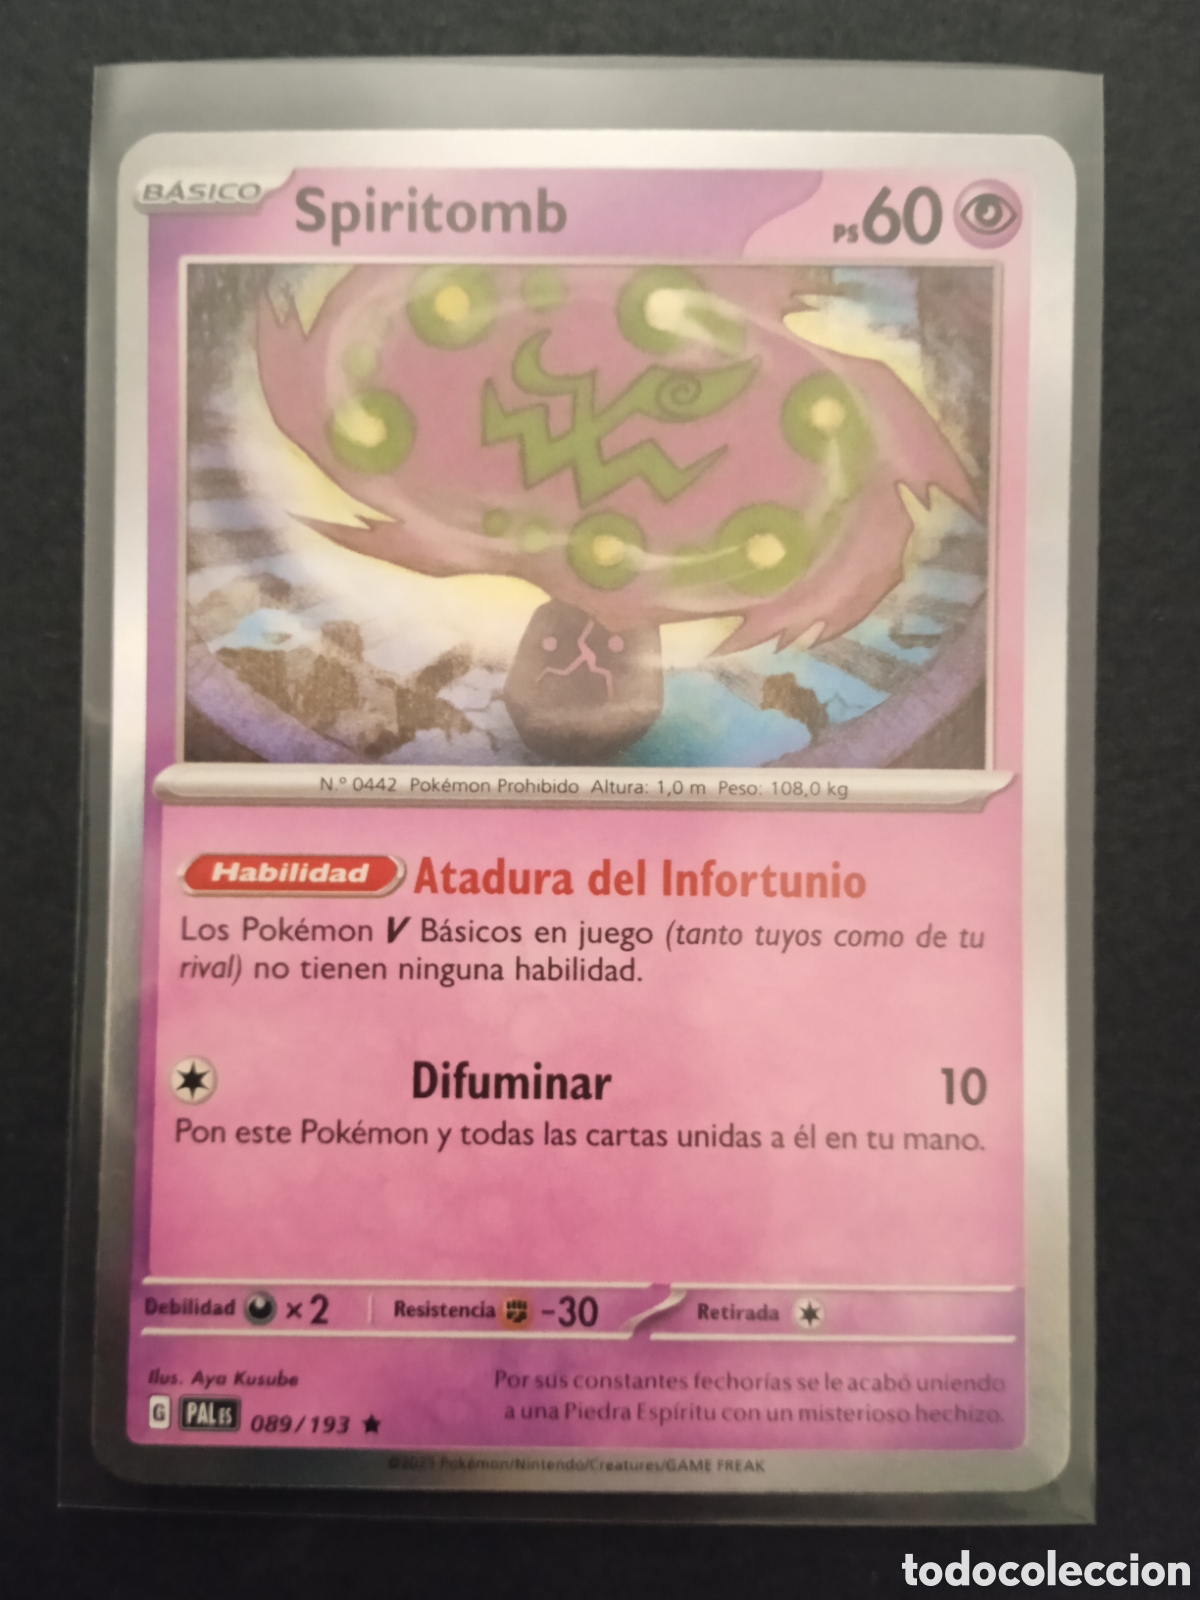 089 / 193 spiritomb holo pokemon card tcg escar - Buy Antique trading cards  on todocoleccion